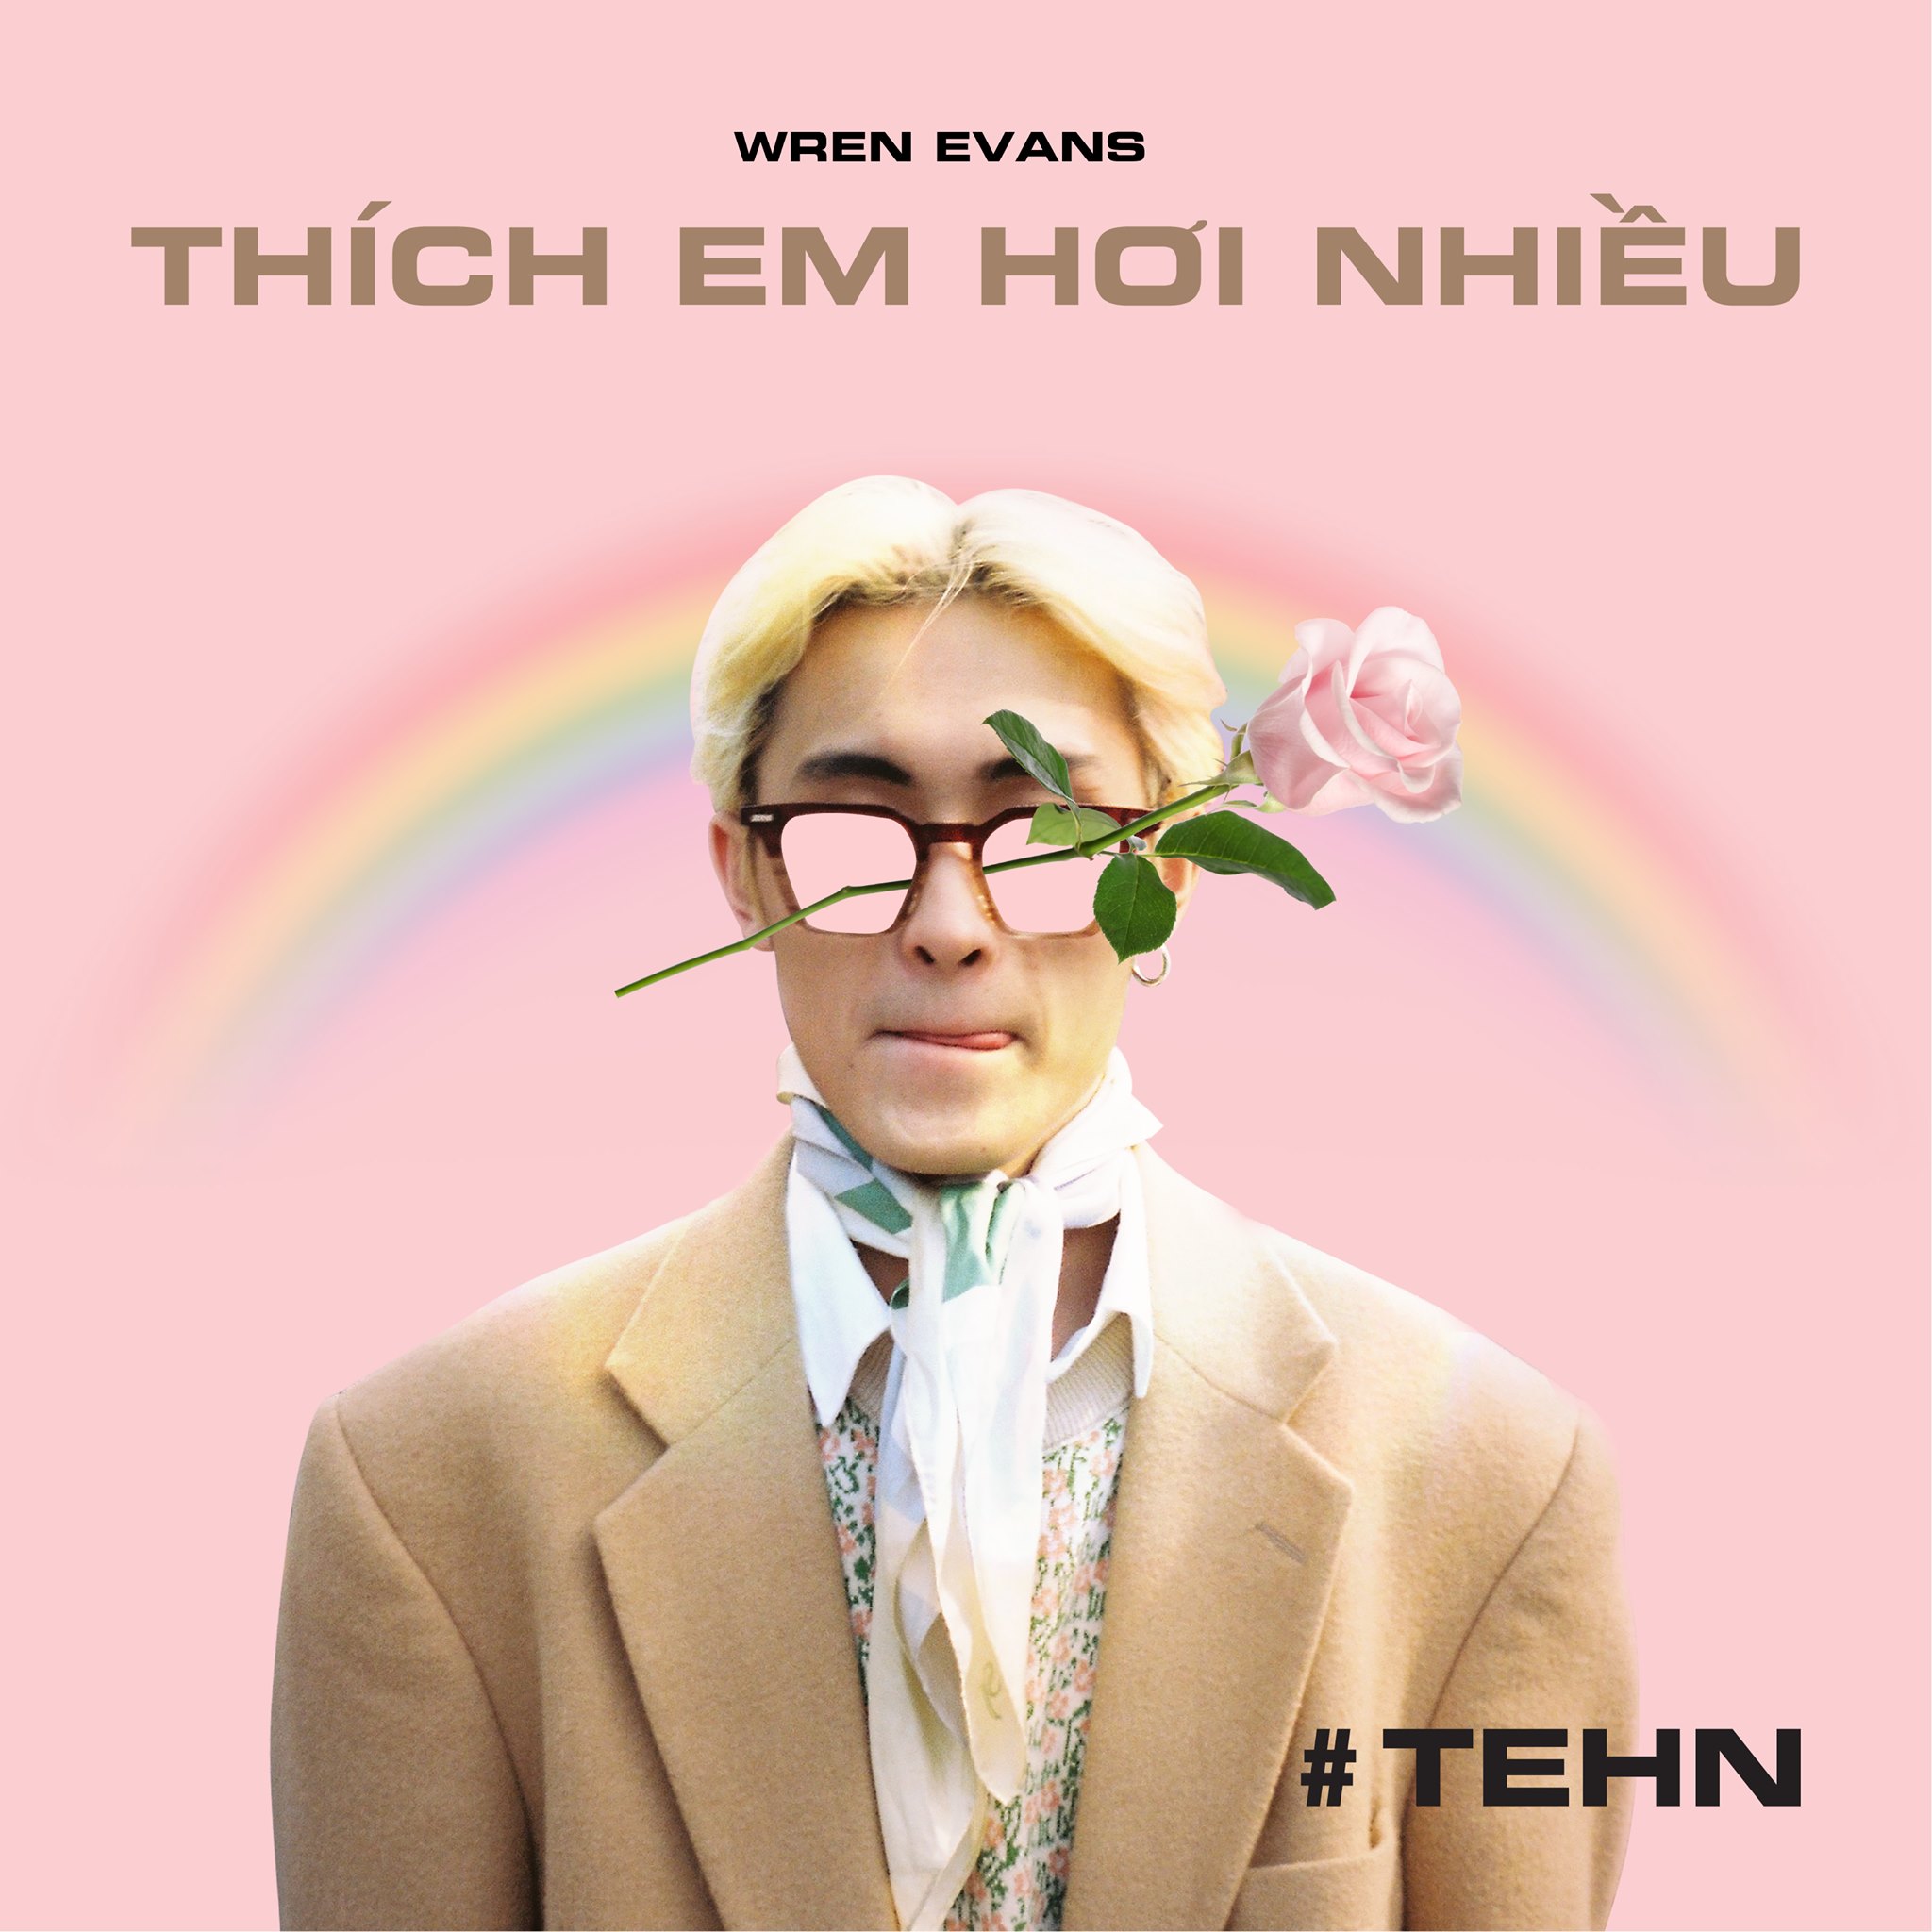 Wren Evans - Tân binh 2001 “chất phát ngất” hé lộ cách yêu của Gen Z trong MV debut - ảnh 1